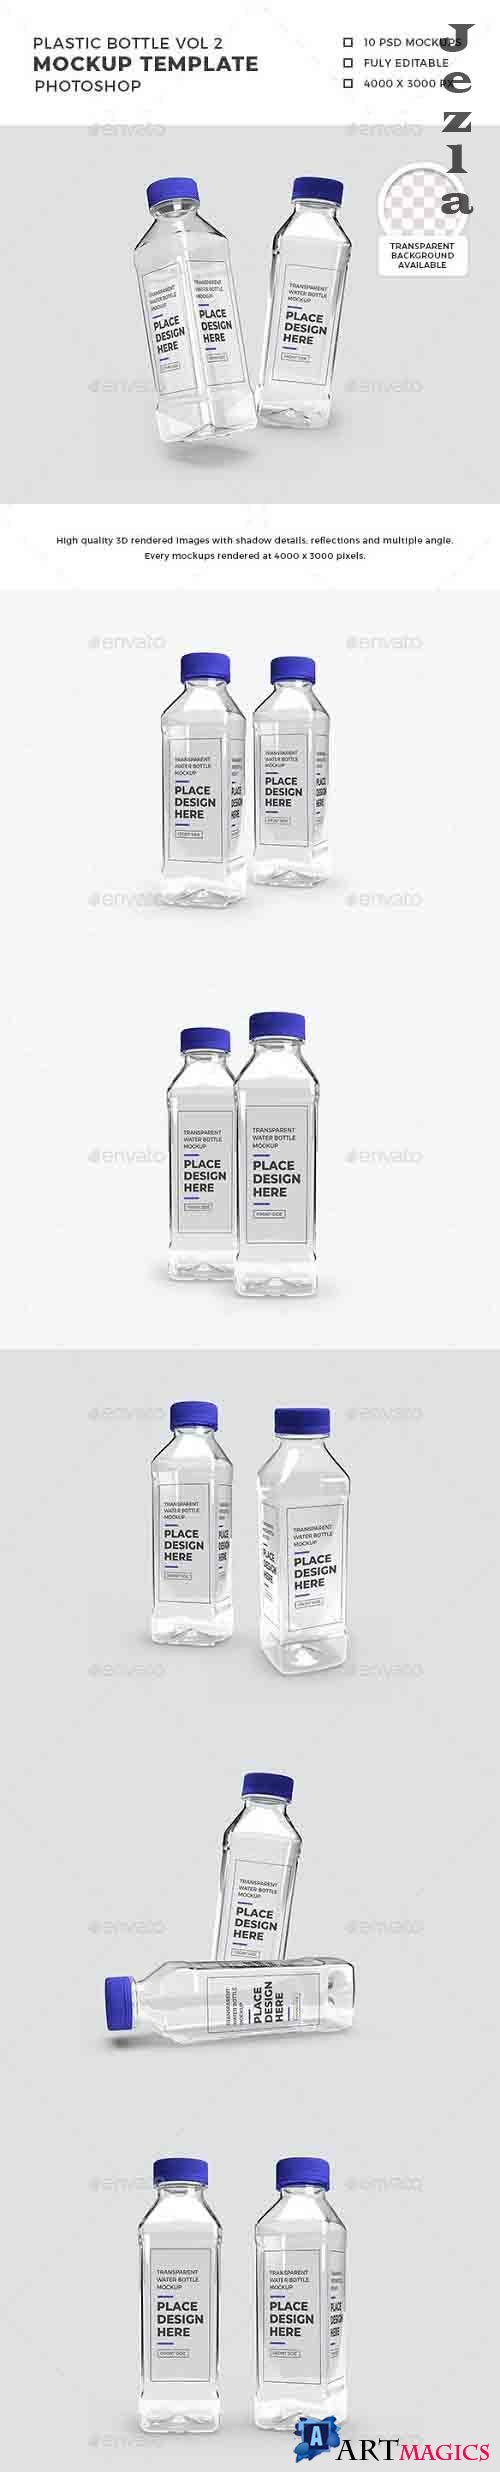 Transparent Plastic Bottle Packaging Mockup Vol 2 - 32552999